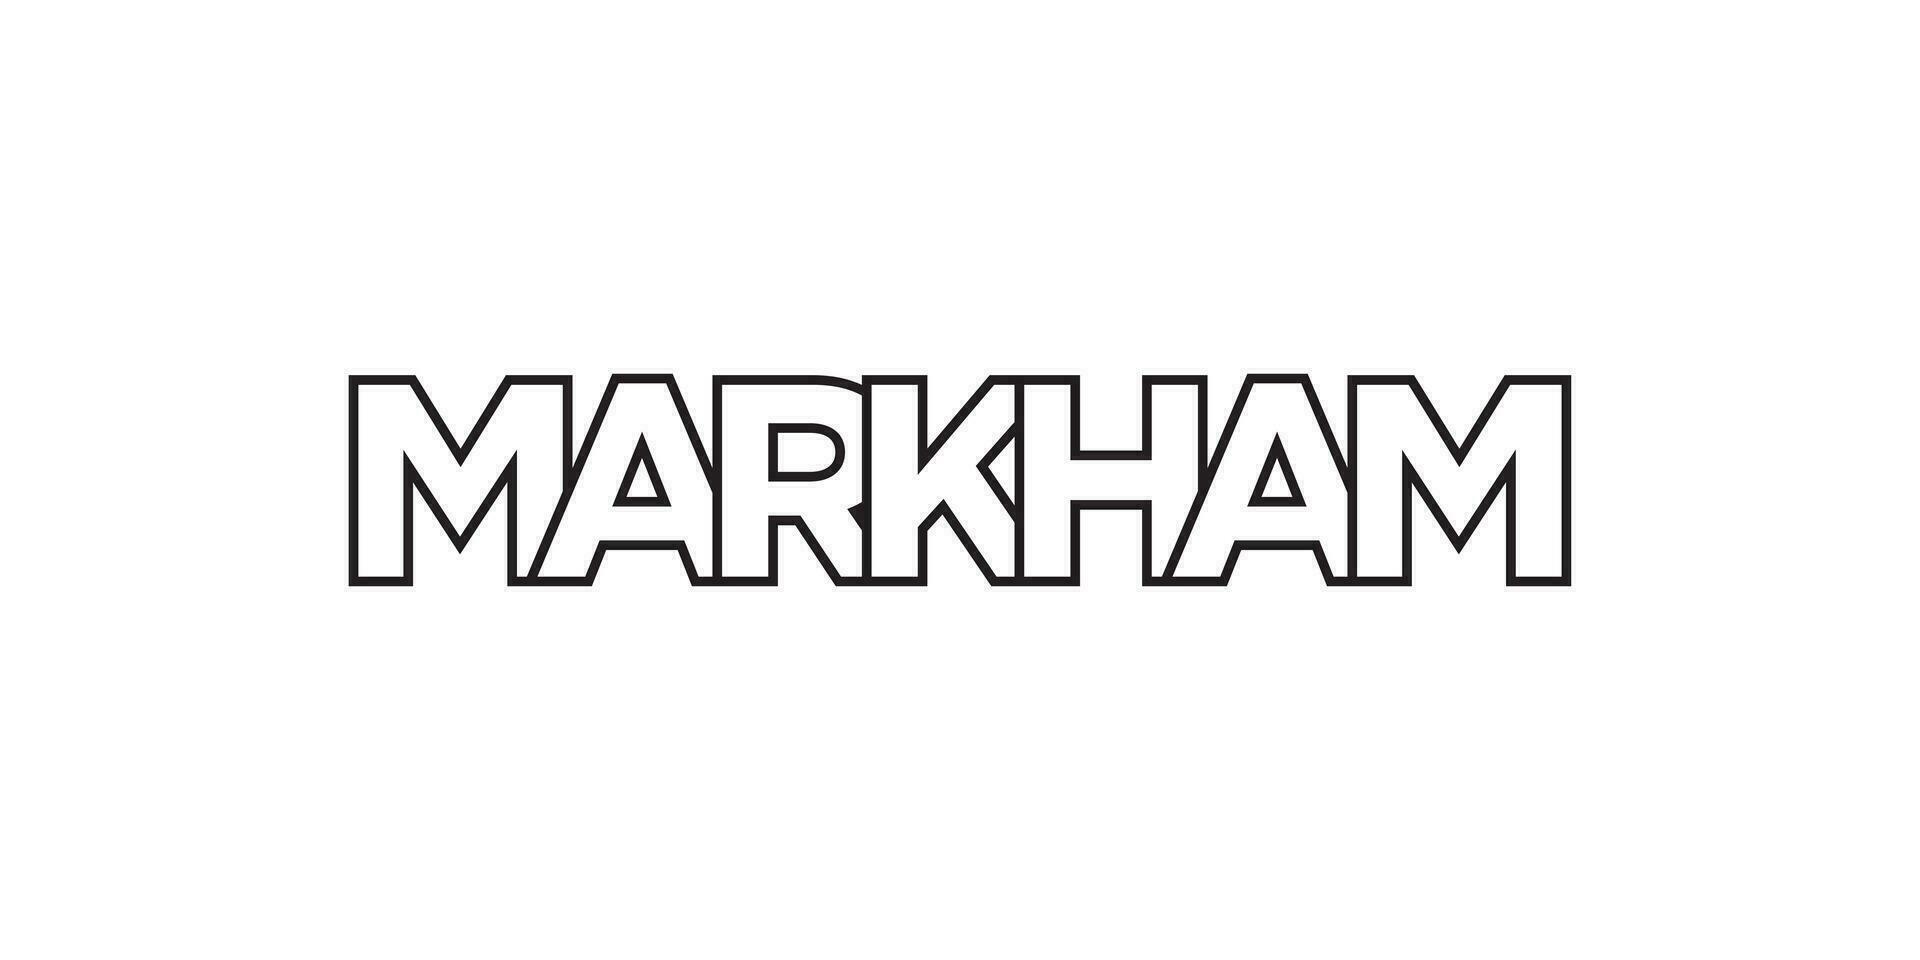 Markham dans le Canada emblème. le conception Caractéristiques une géométrique style, vecteur illustration avec audacieux typographie dans une moderne Police de caractère. le graphique slogan caractères.